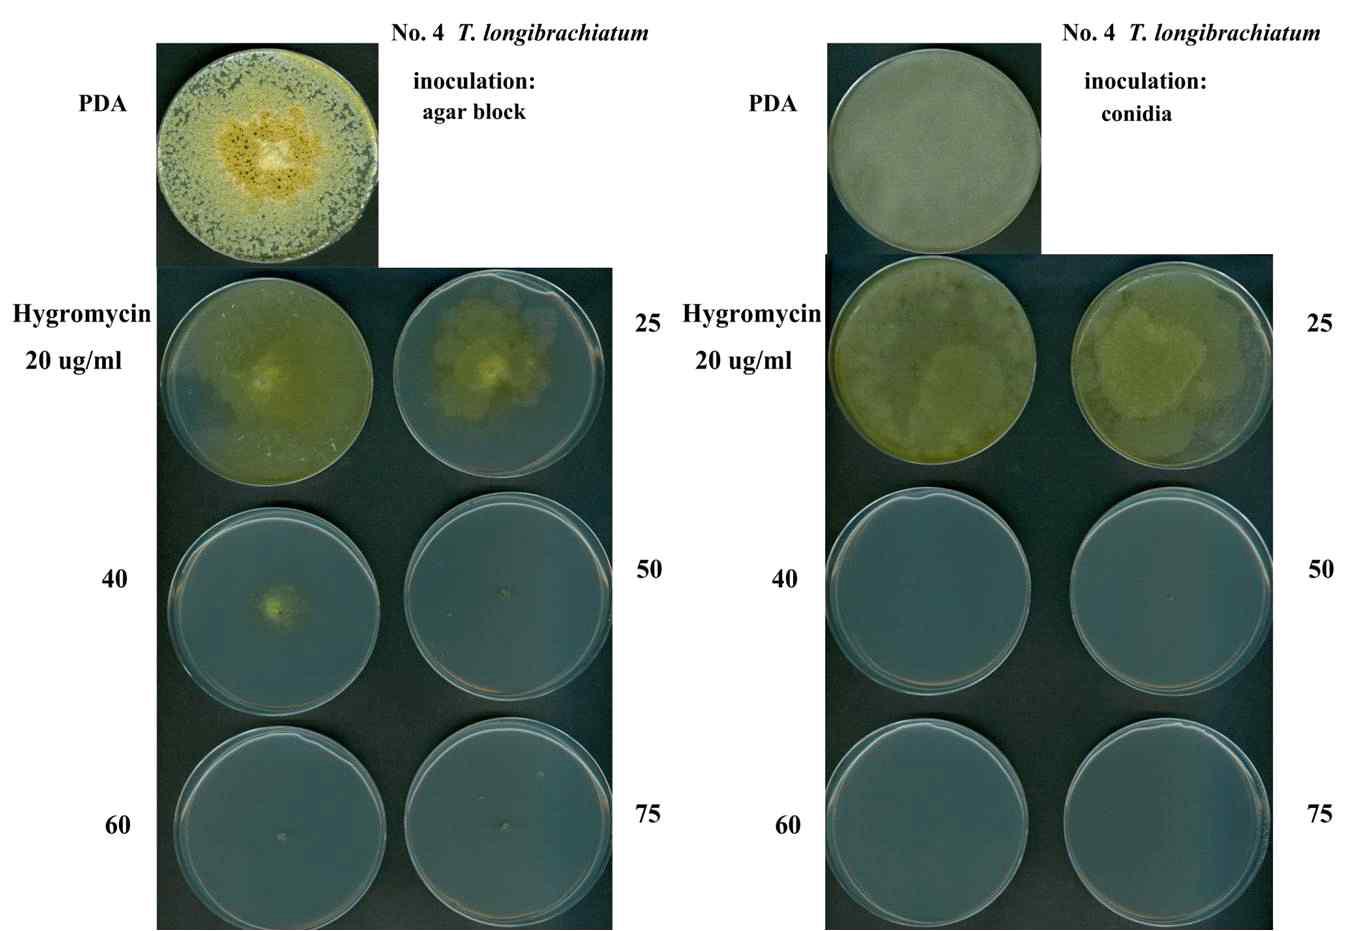 버섯피해균주, T. longibrachiatum의 antibiotic selective marker test. Hygromycin 20, 40, 60ug/ml을 각각 첨가한 PDA 고체배지에 오염균주 각각을 접종하여 30℃에서 1주일간 배양 후 관찰